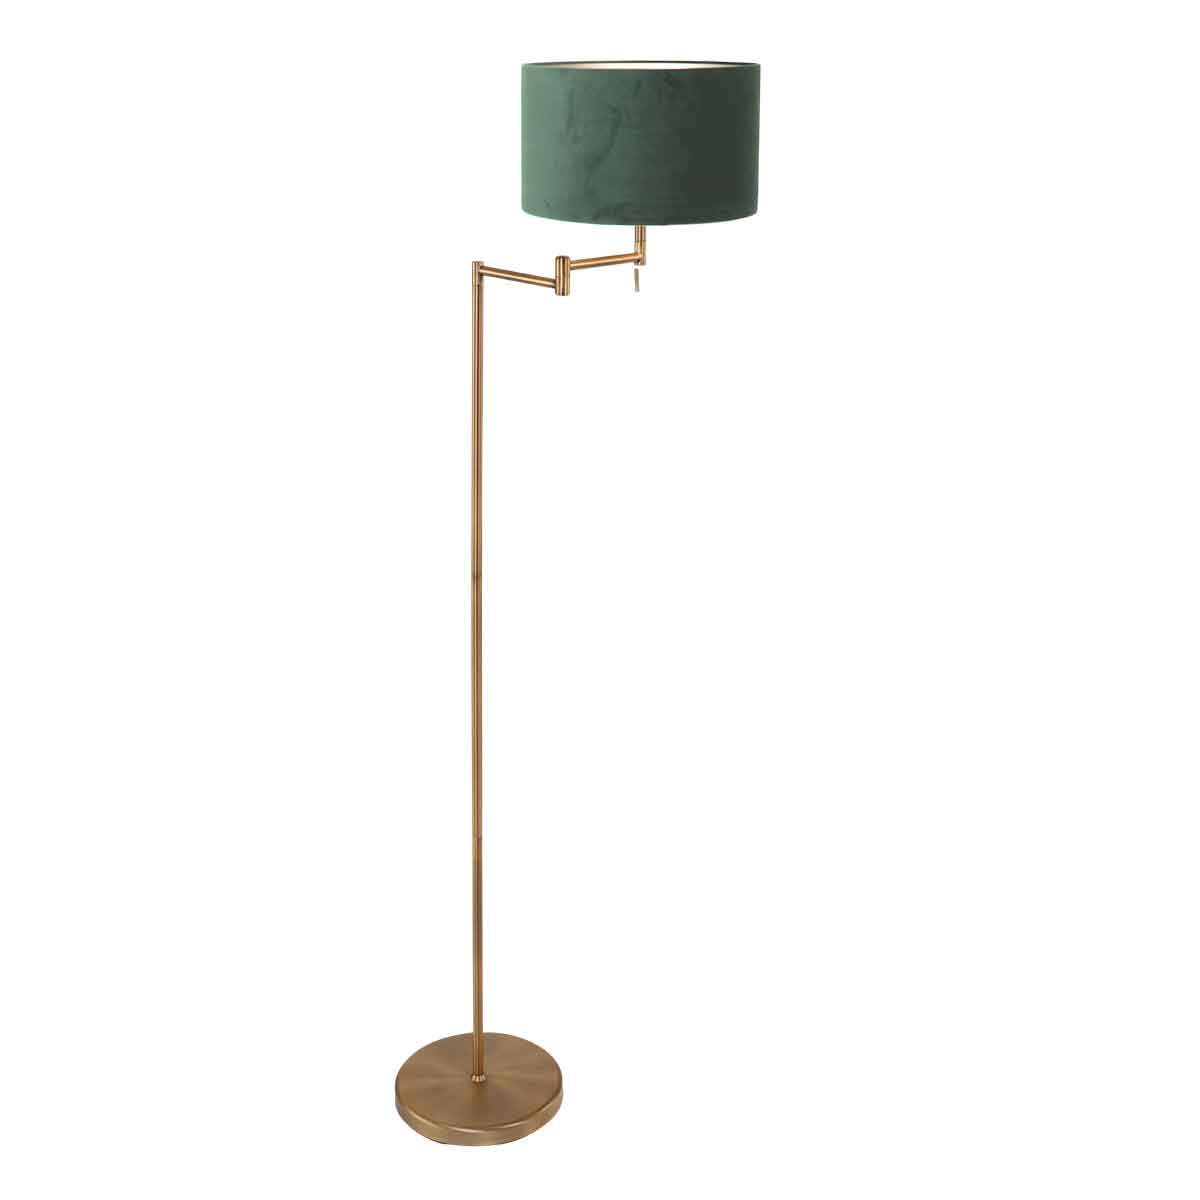 bronskleurige-vloerlamp-bella-3872br-met-groen-fluweelachtige-kap-vloerlamp-mexlite-bella-brons-en-groen-3872br